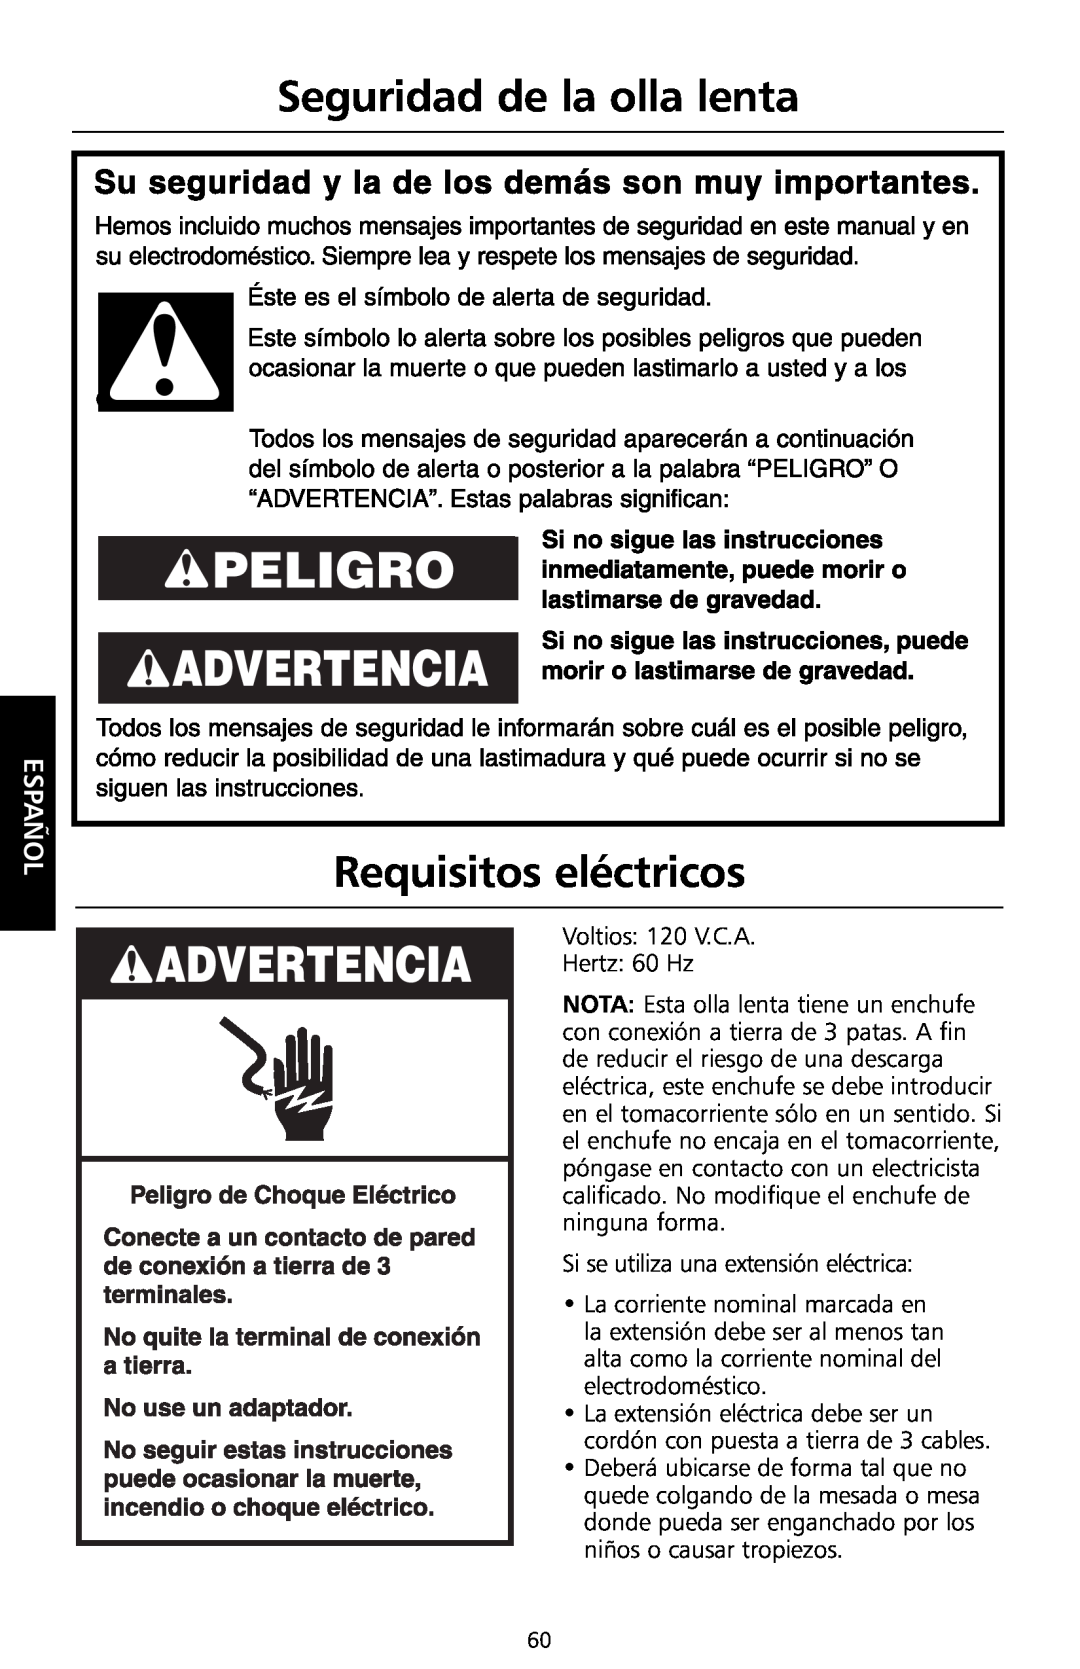 KitchenAid KSC700 manual Seguridad de la olla lenta, Requisitos eléctricos, Español 